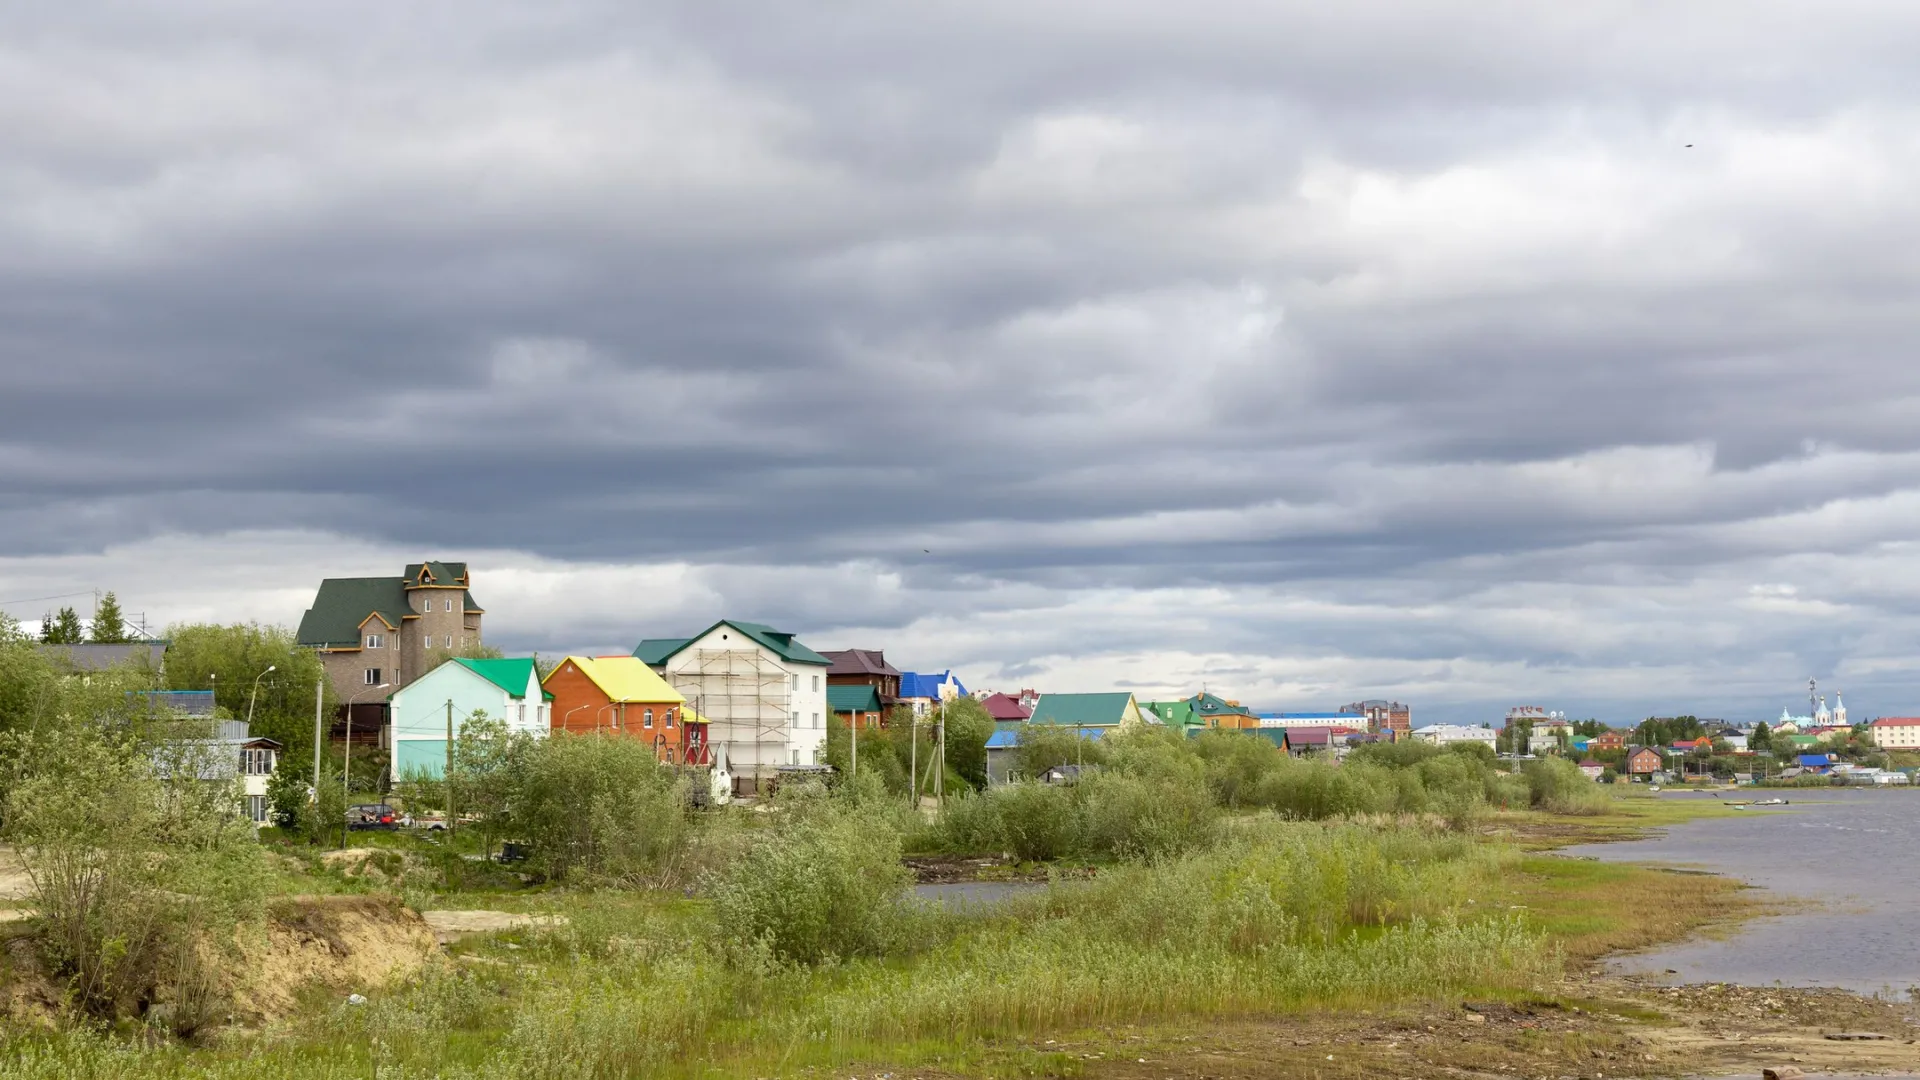 Средняя стоимость частного дома на Ямале составляет 9 млн рублей. Фото: Федор Воронов / «Ямал-Медиа»